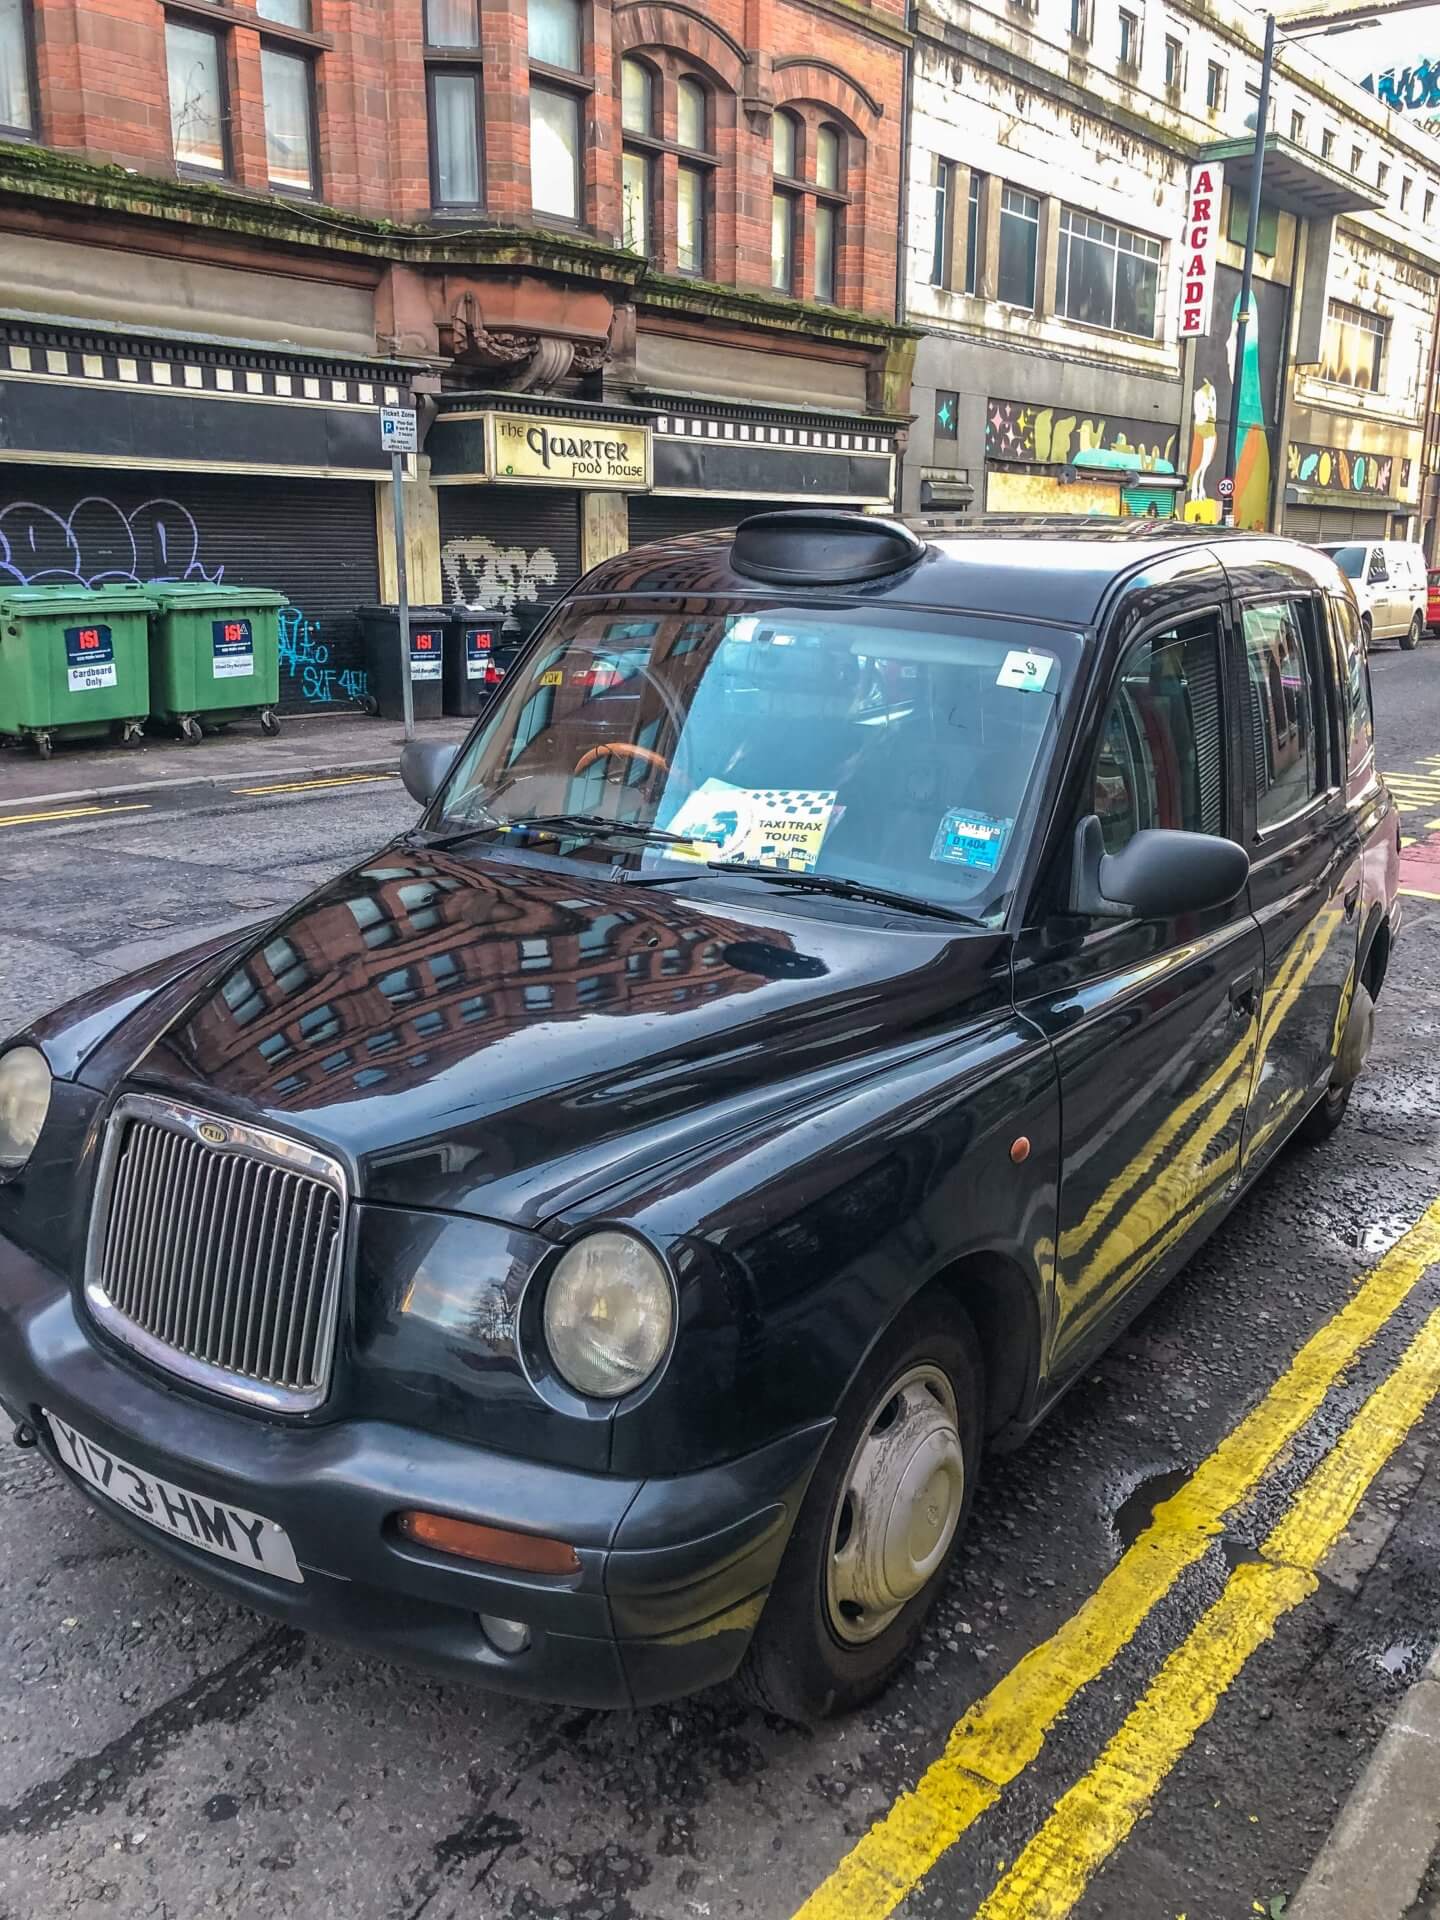 Black Cab Tour in Belfast